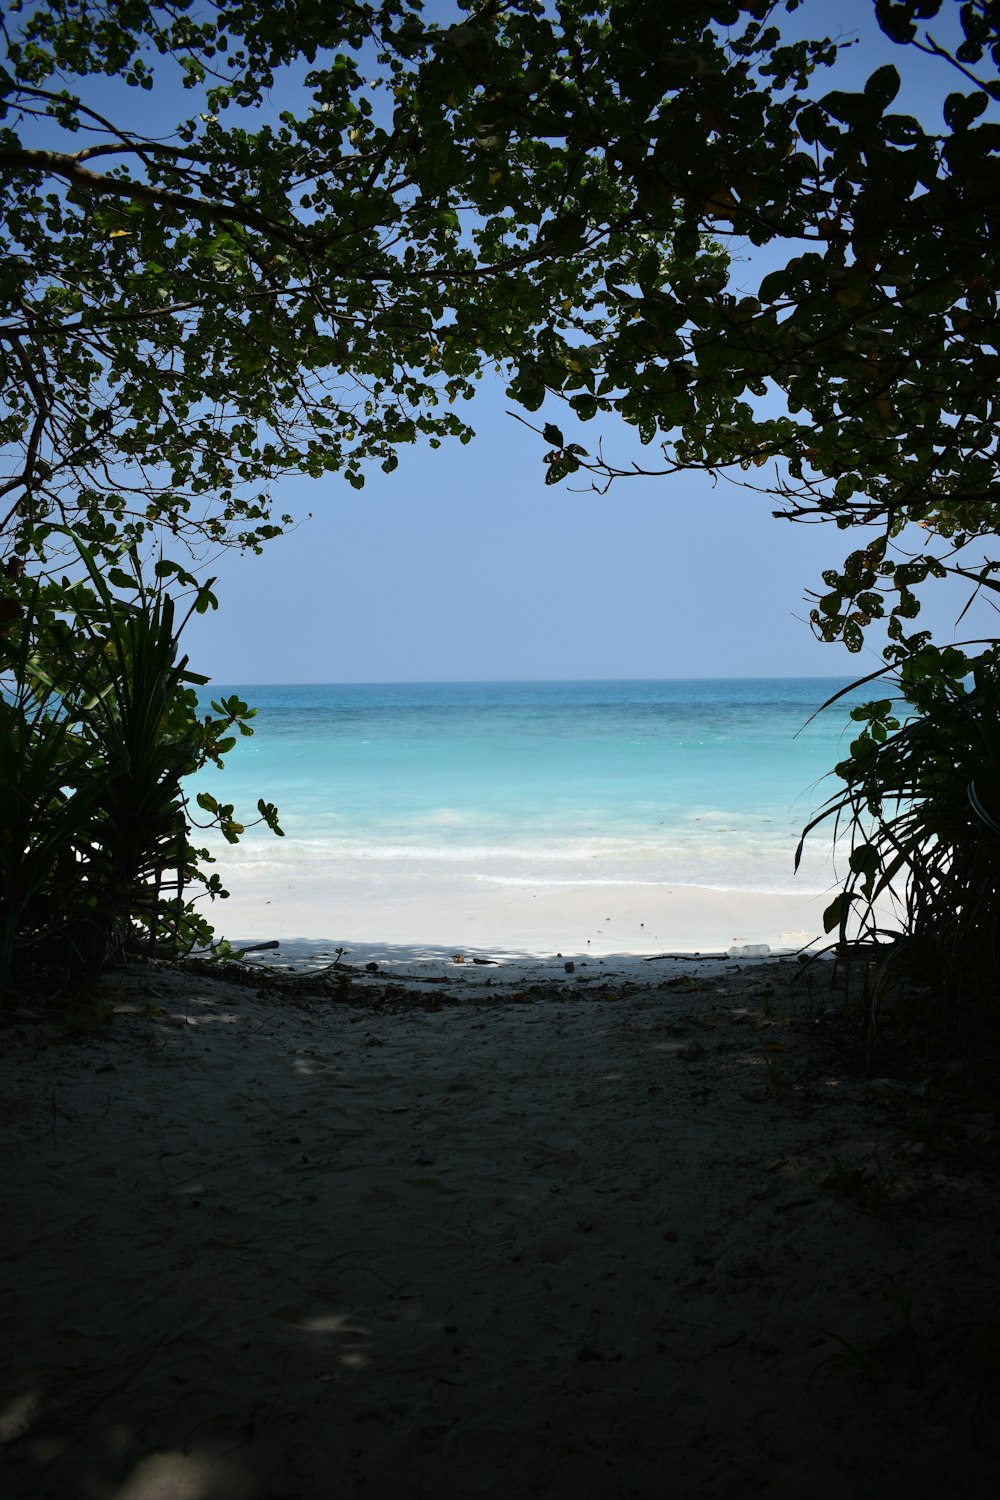 a view of a beach through a tree